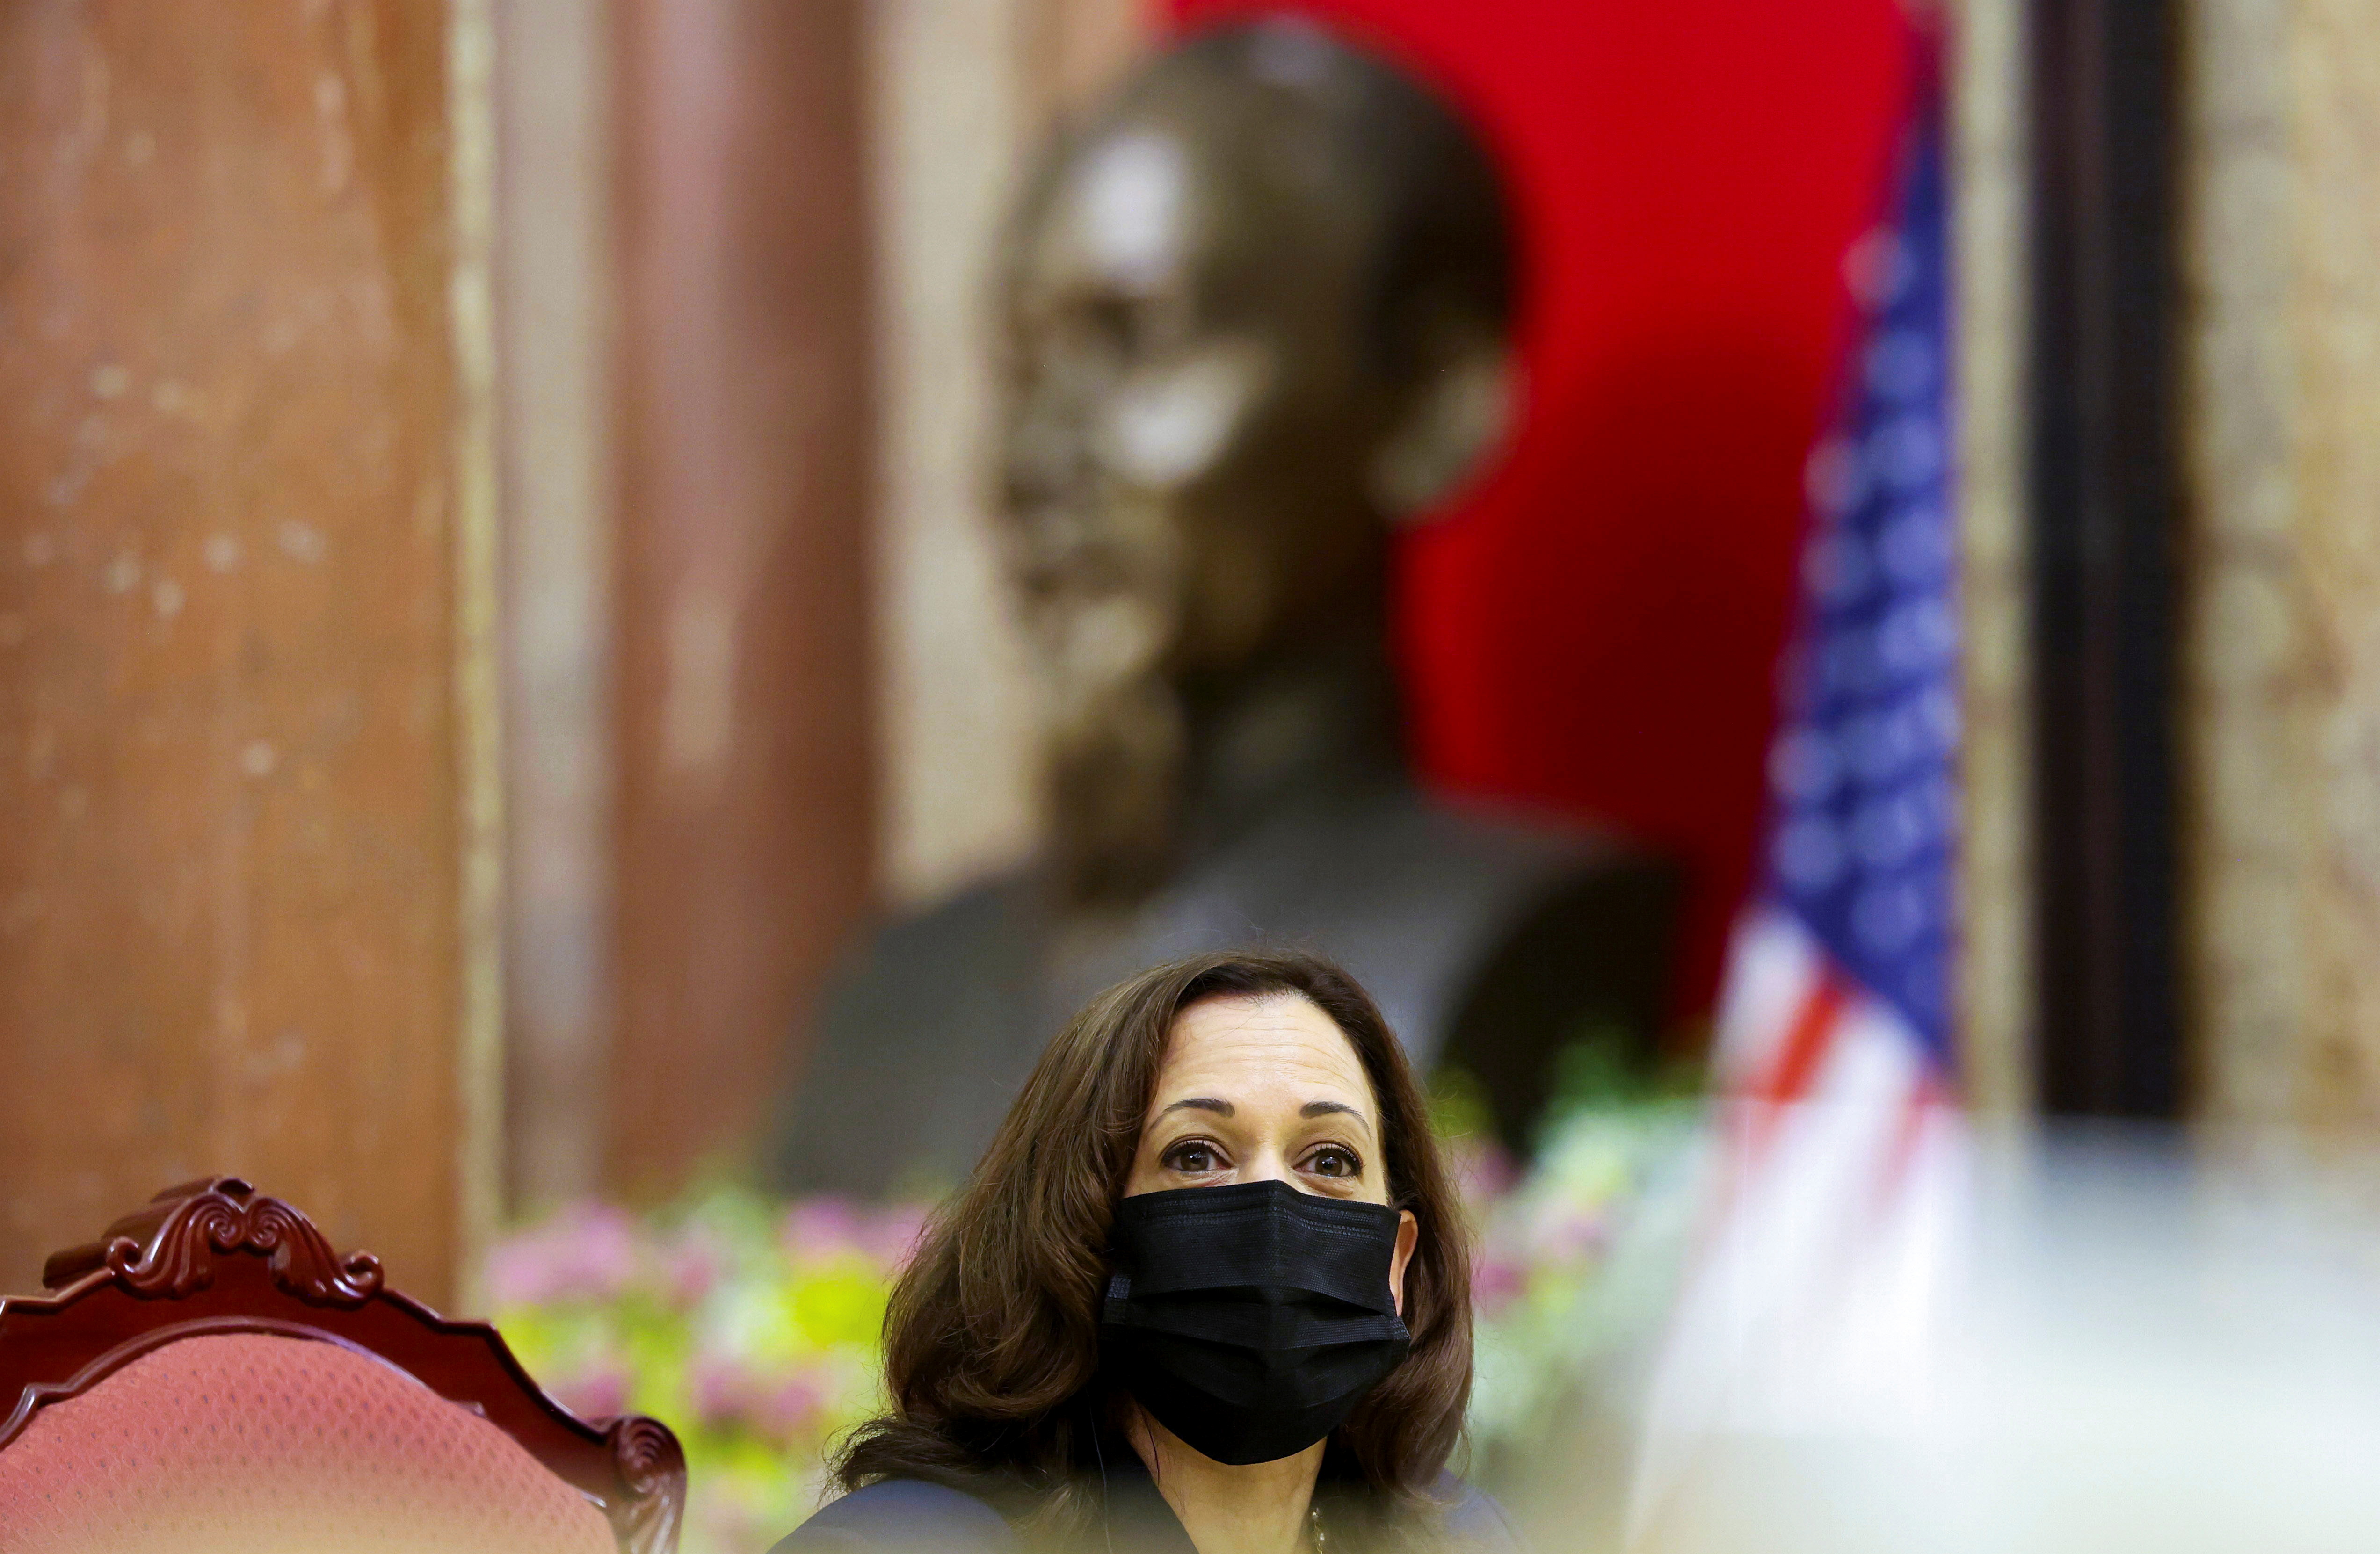 U.S. VP Harris visits Vietnam